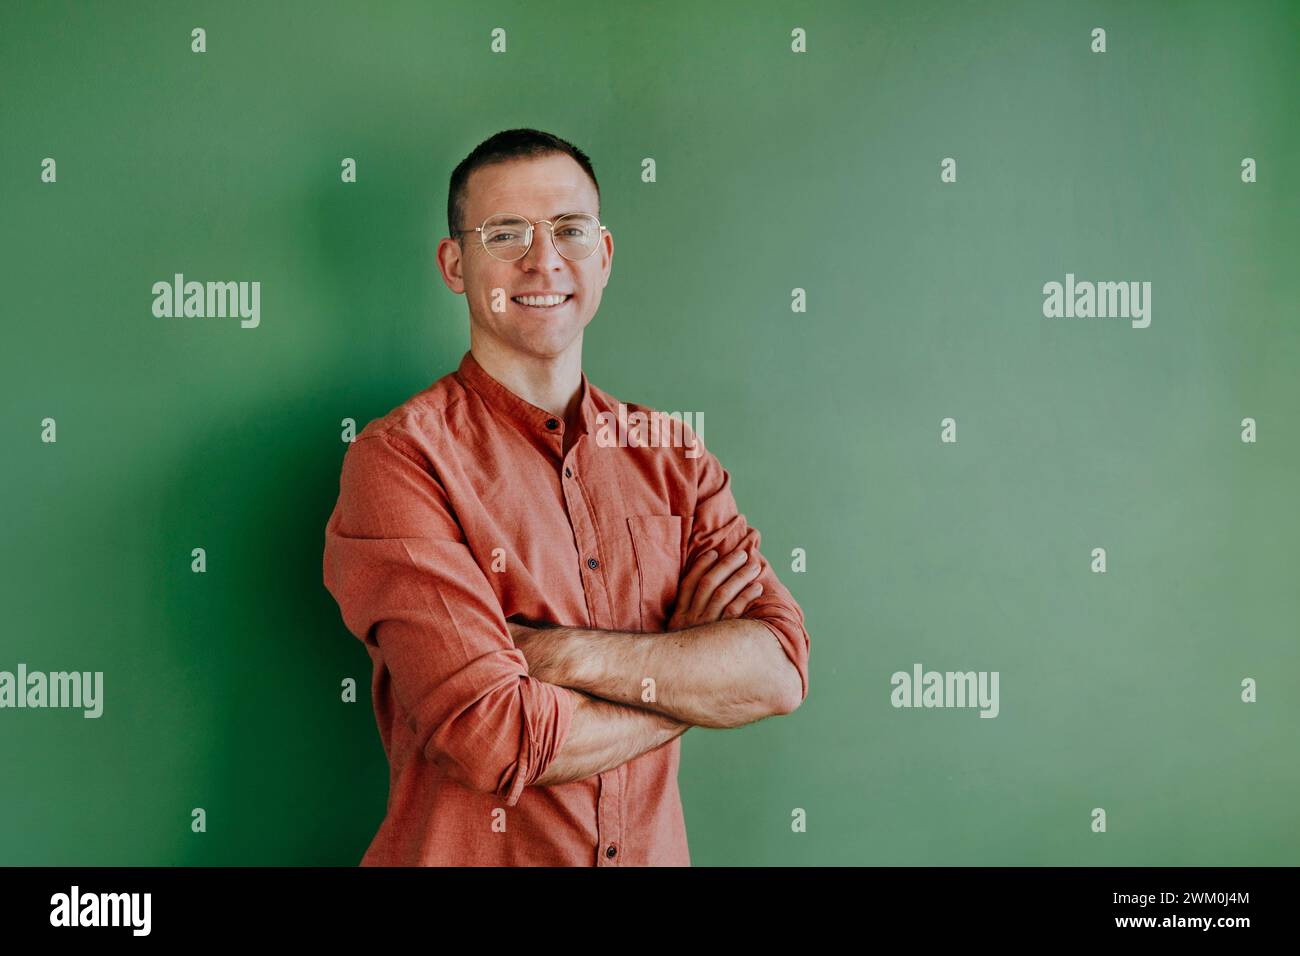 Lächelnder Mann mit Brille, Arme vor grüner Wand gekreuzt Stockfoto